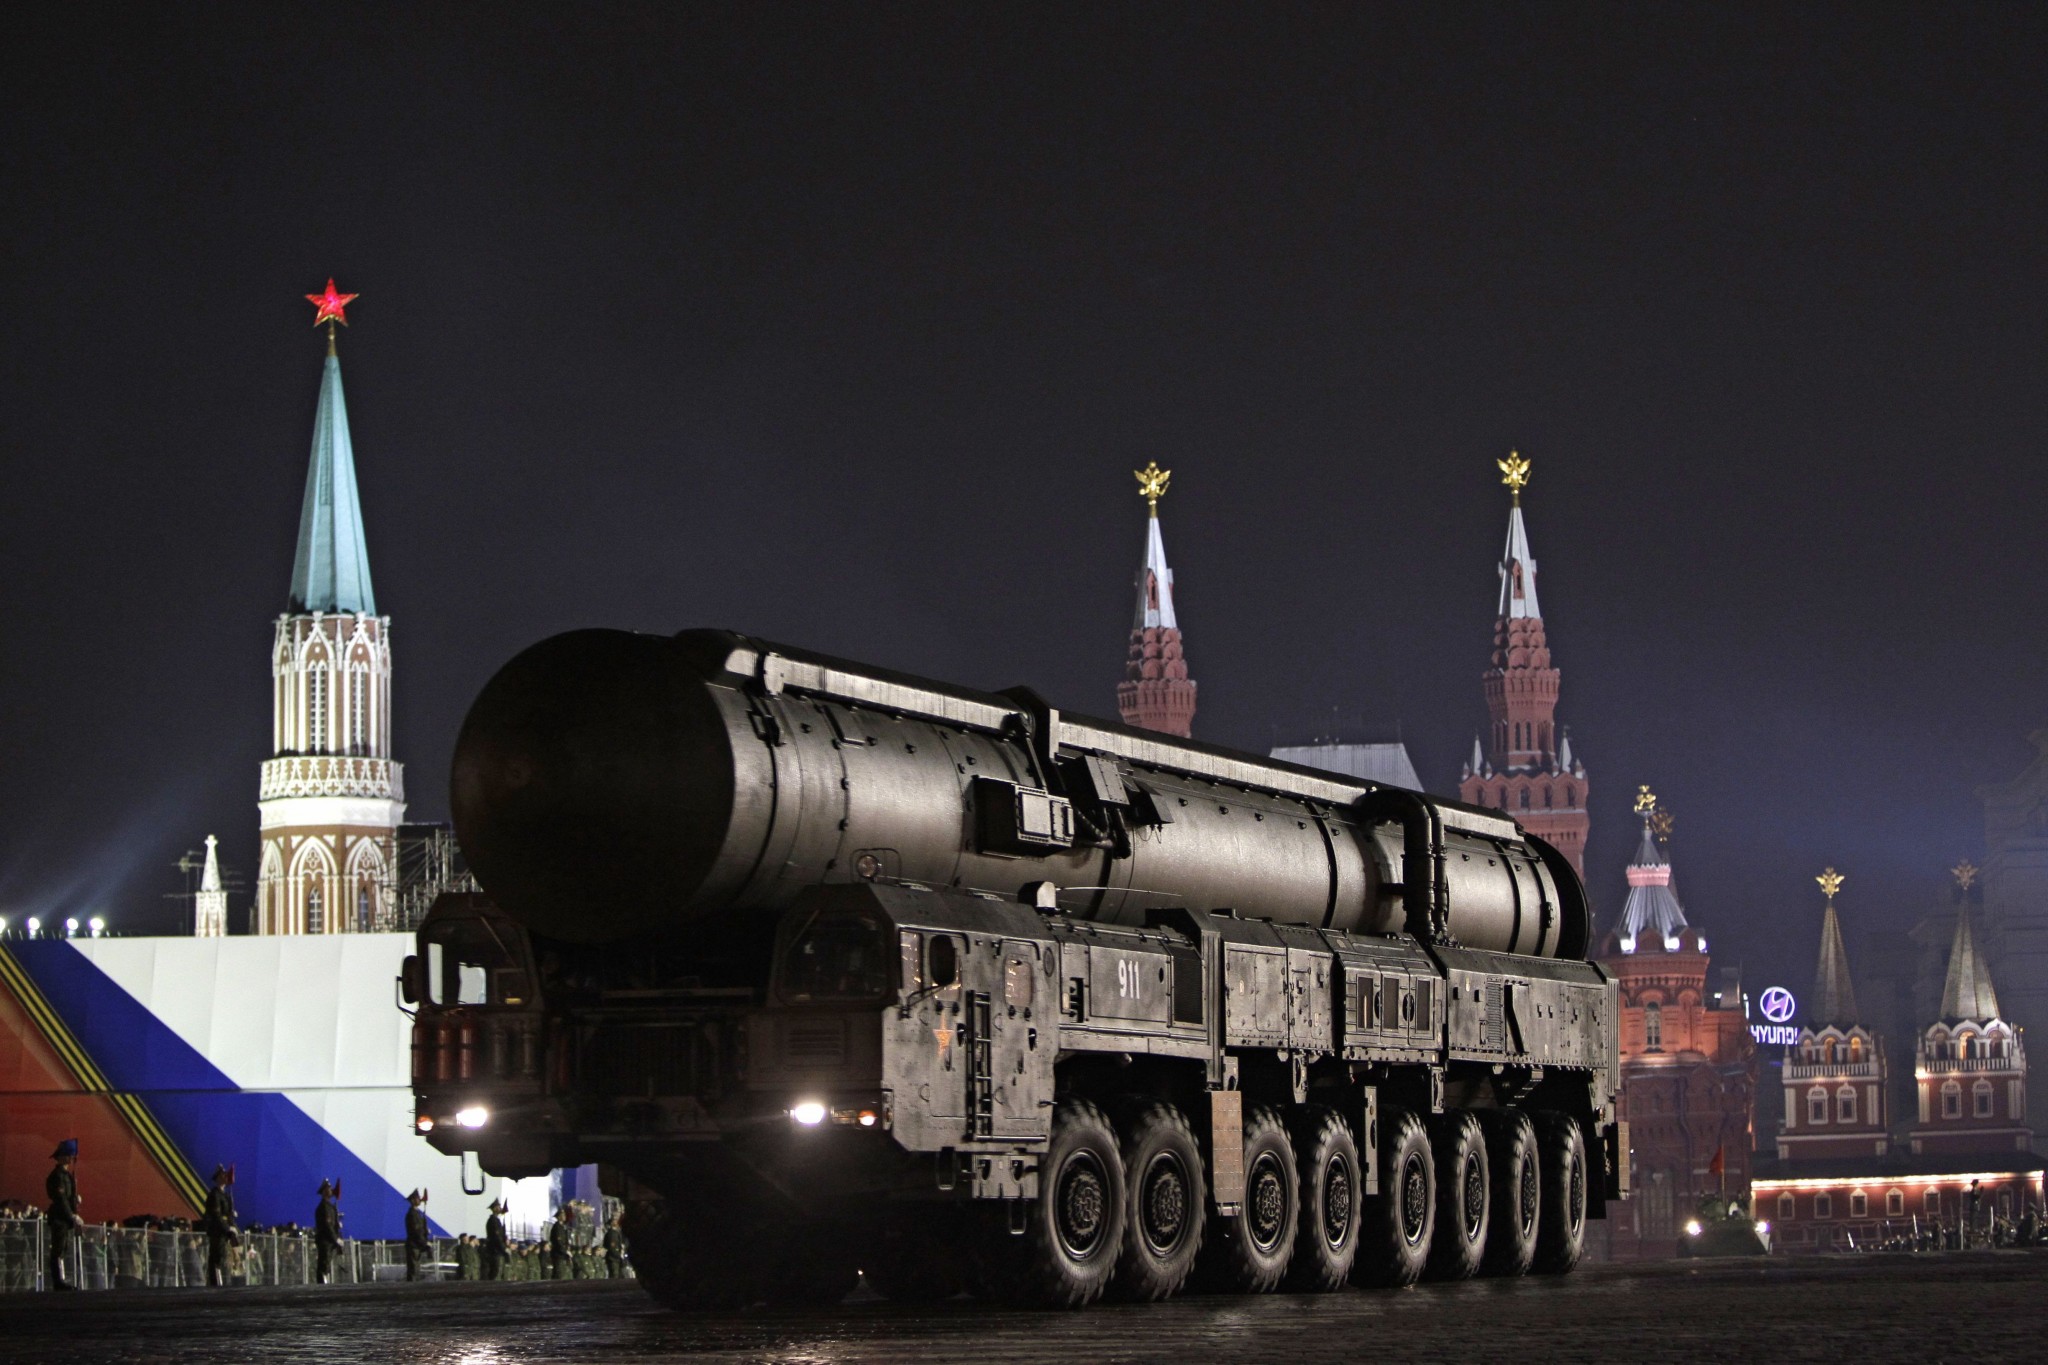 Ρωσία: Έτοιμη να «παγώσει» τον συνολικό της αριθμό των πυρηνικών κεφαλών για να παραταθεί η συνθήκη START